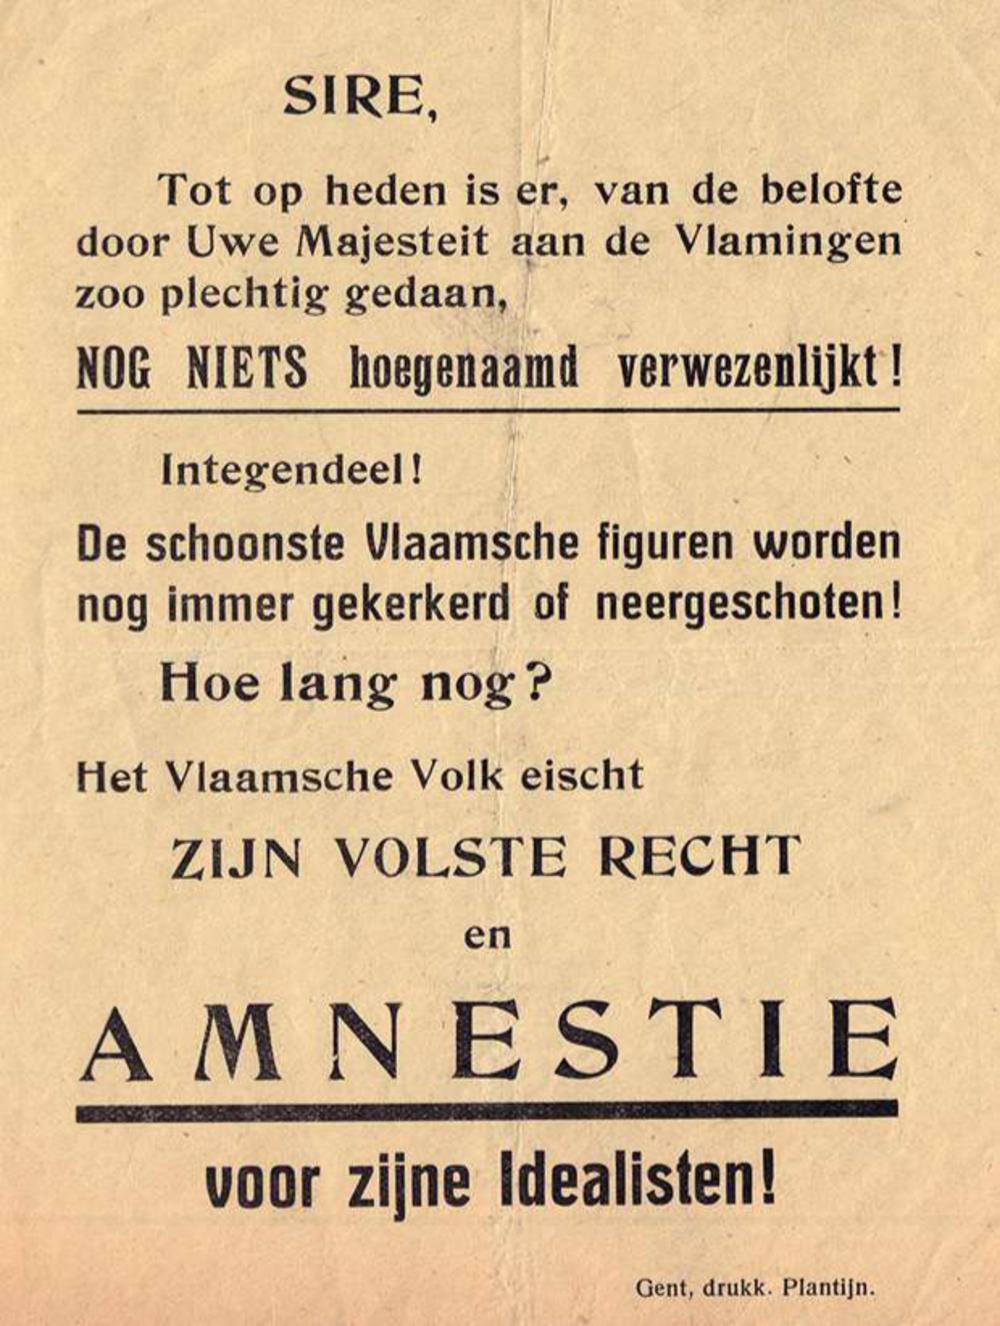 Vlaams-nationaal pamflet dat verwijst naar de 'belofte' van koning Albert in zijn rede van 22 november 1918. Die 'belofte' omvat een regeringsinitiatief voor de realisatie van een Vlaamse universiteit, maar zeker niet amnestie voor Vlaamse collaborateurs.